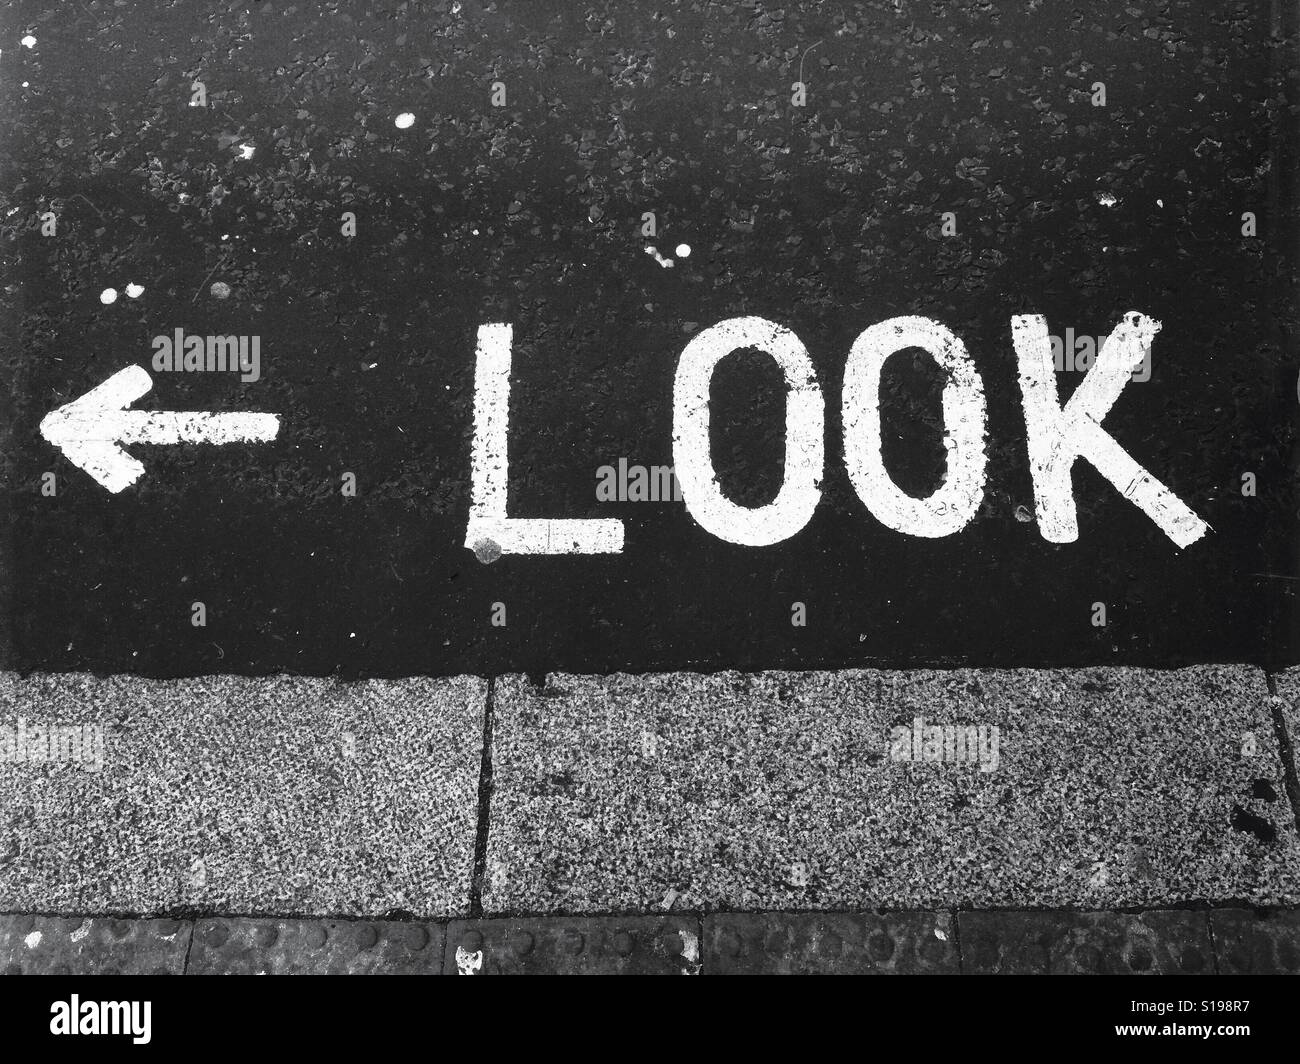 Suchen Sie linken Zeichen. Das Wort "Look" auf der Straße in fetten weißen Großbuchstaben, mit Pfeil nach links gemalt. Stockfoto